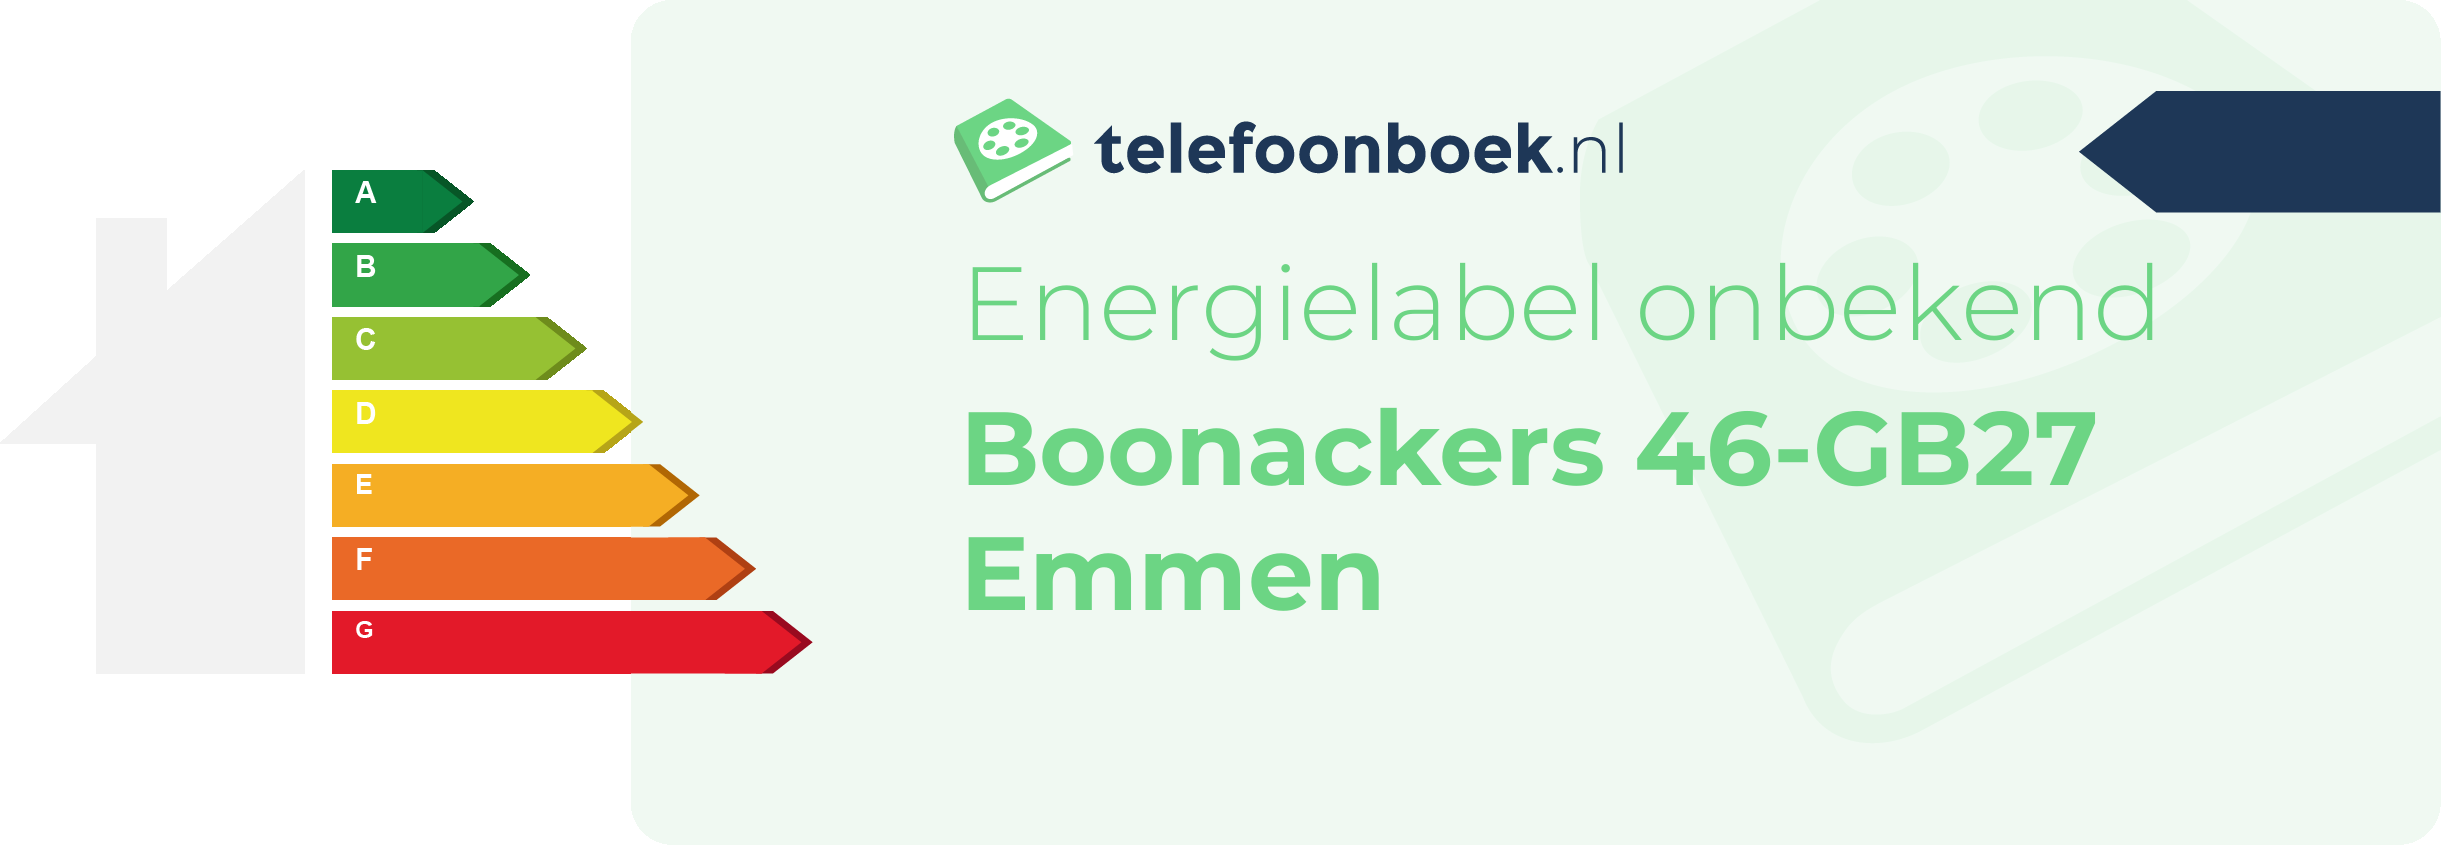 Energielabel Boonackers 46-GB27 Emmen